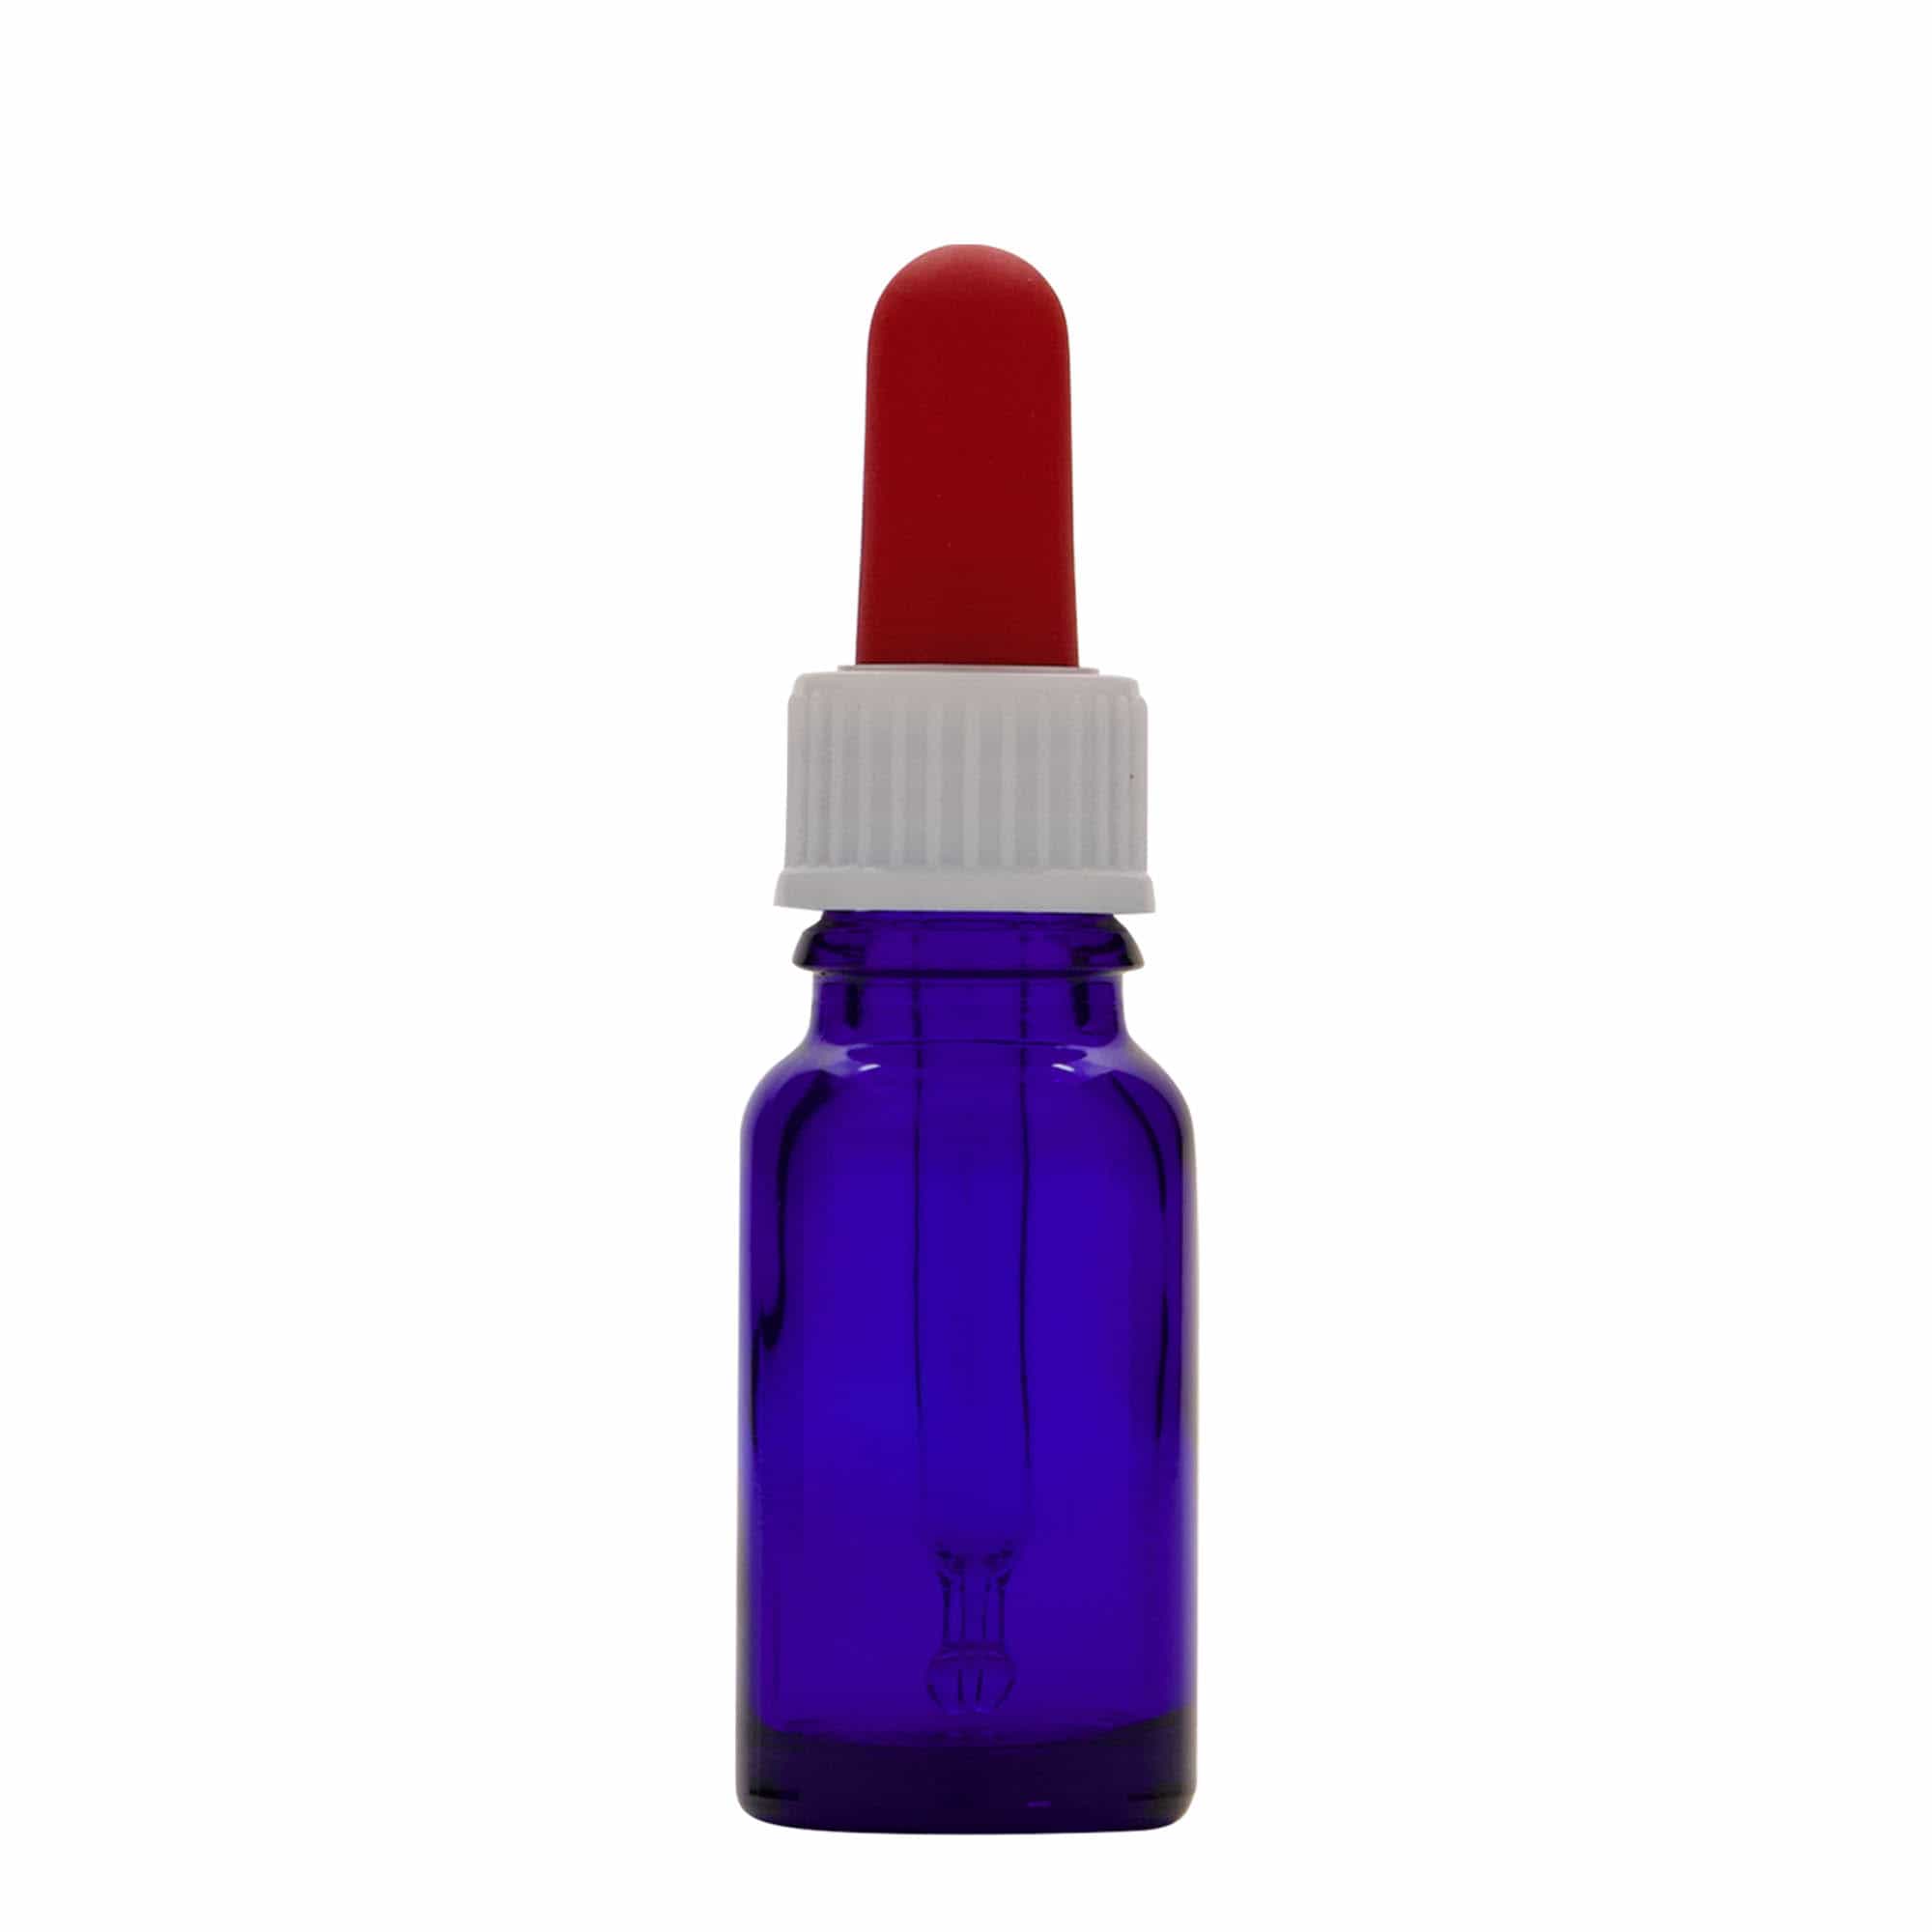 10 ml butelka farmaceutyczna z pipetą, szkło, kolor błękit królewski i czerwony, zamknięcie: DIN 18